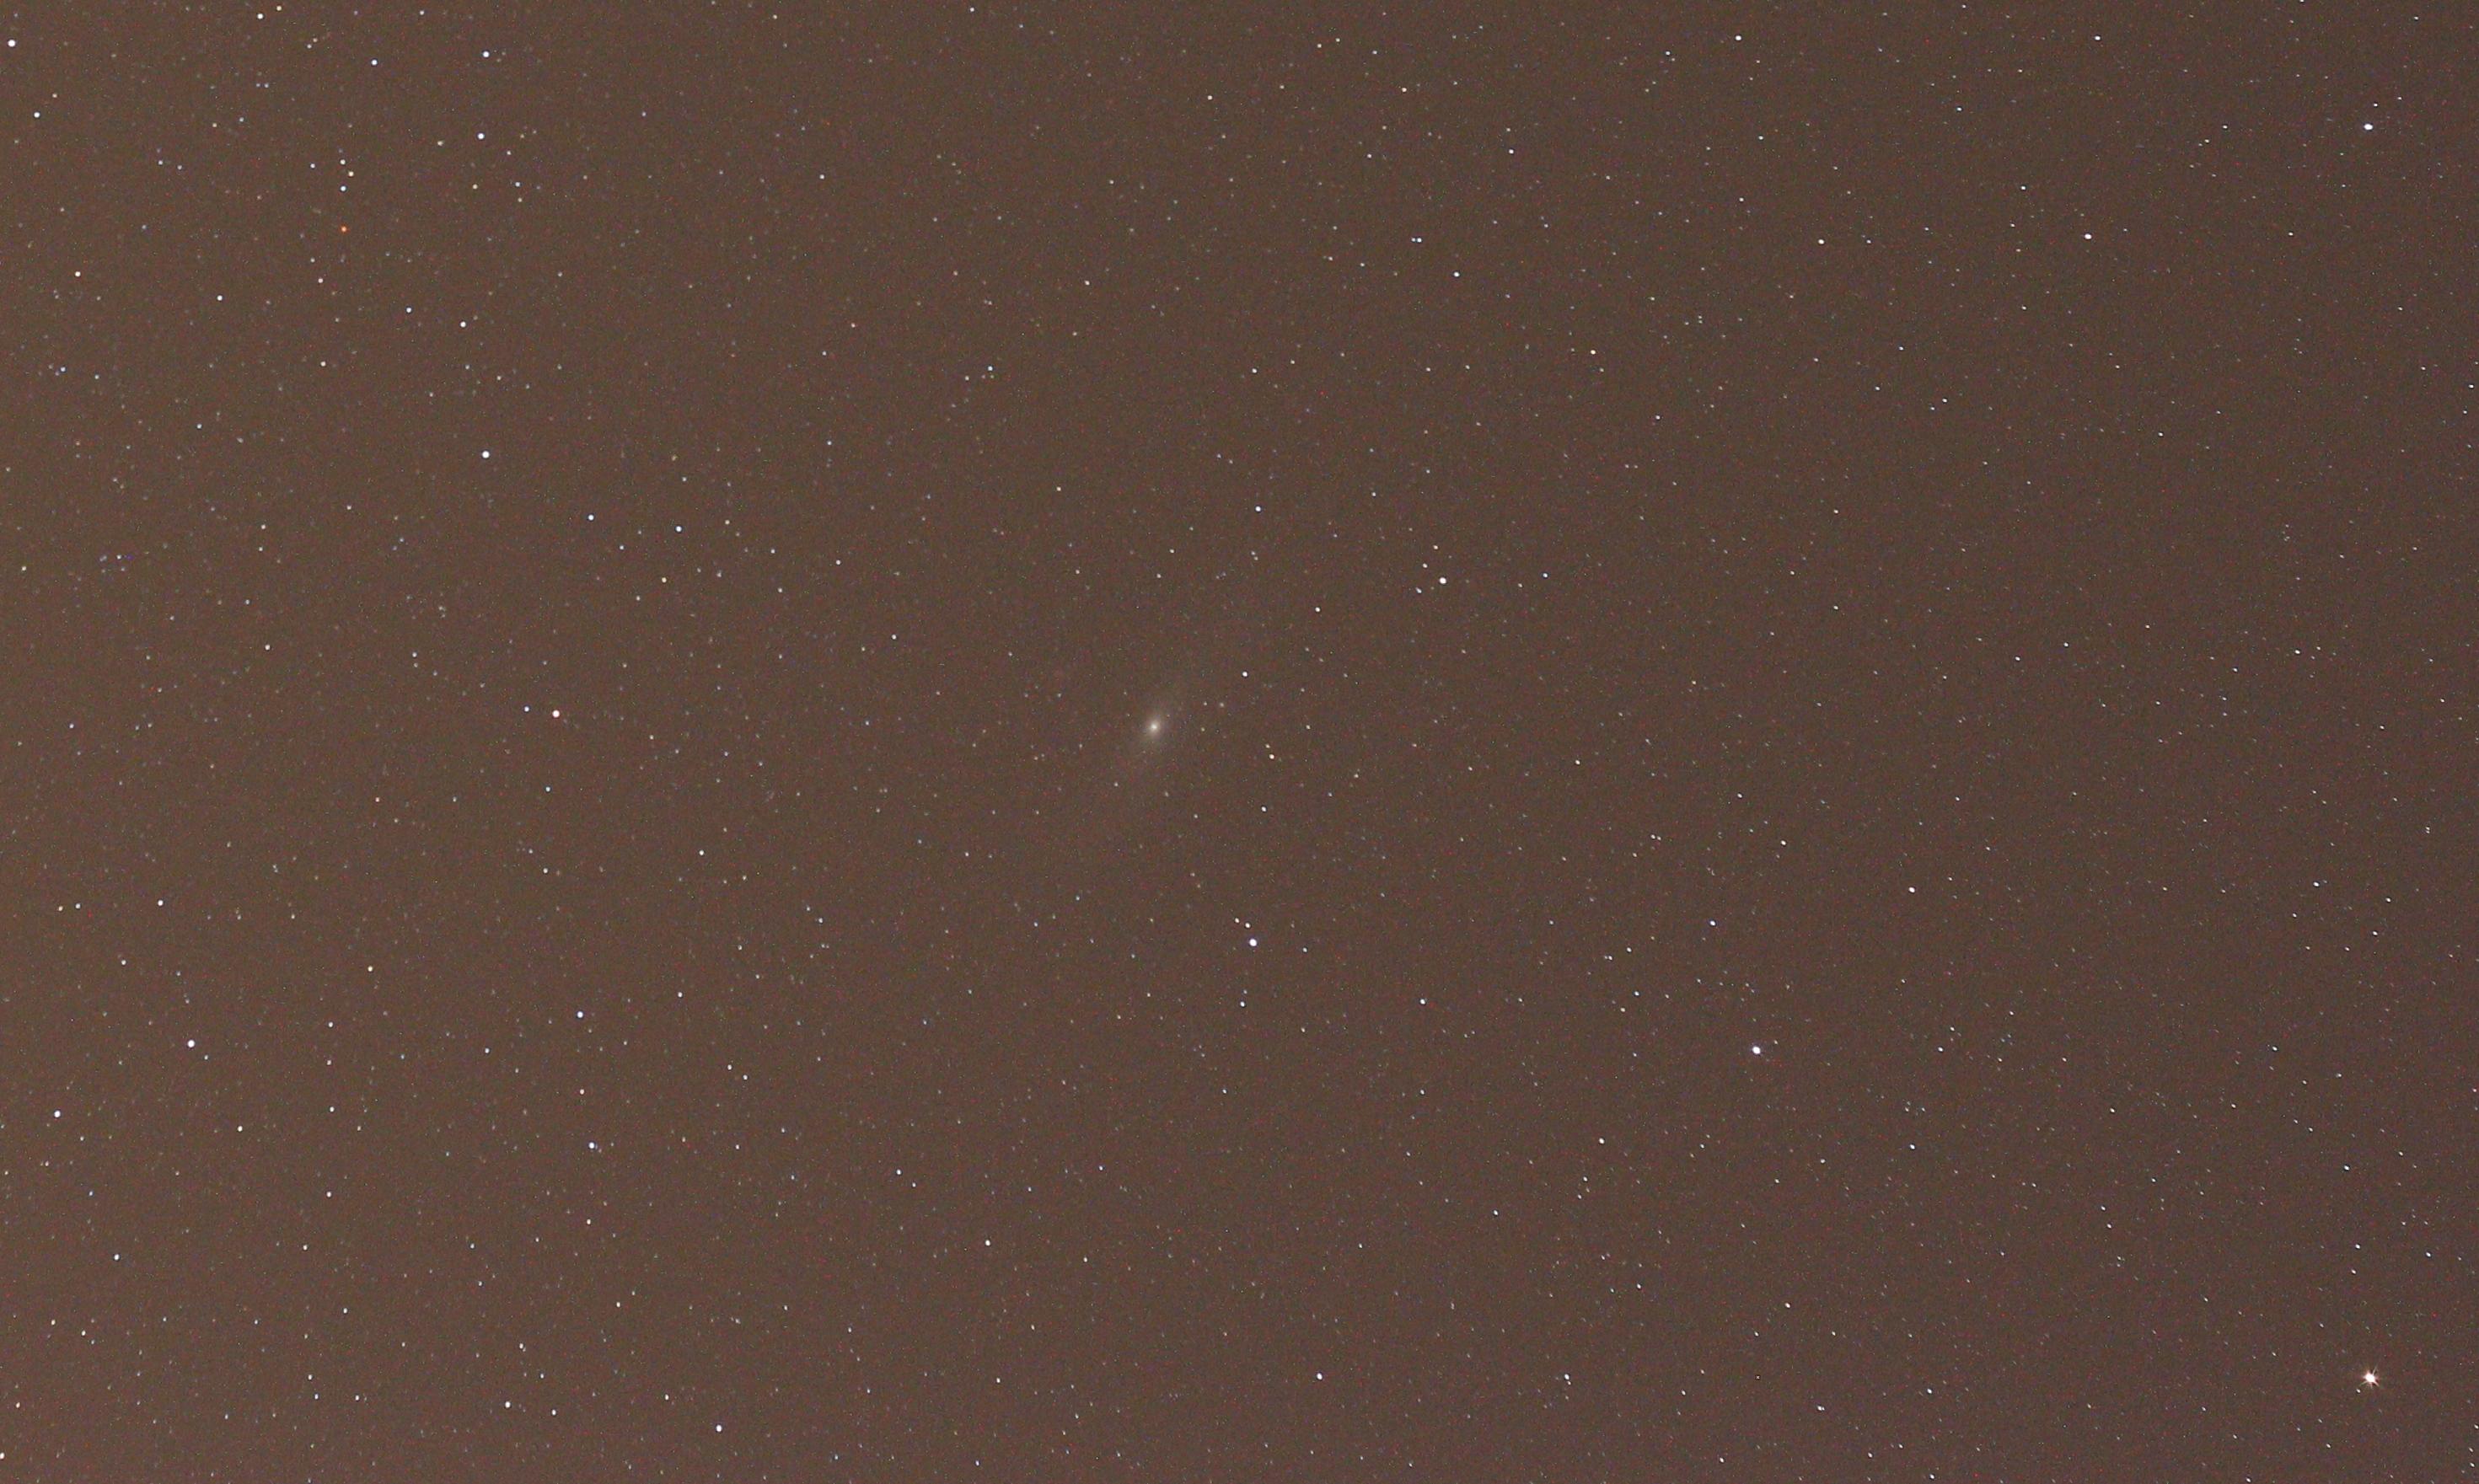 仙女座大星雲M31